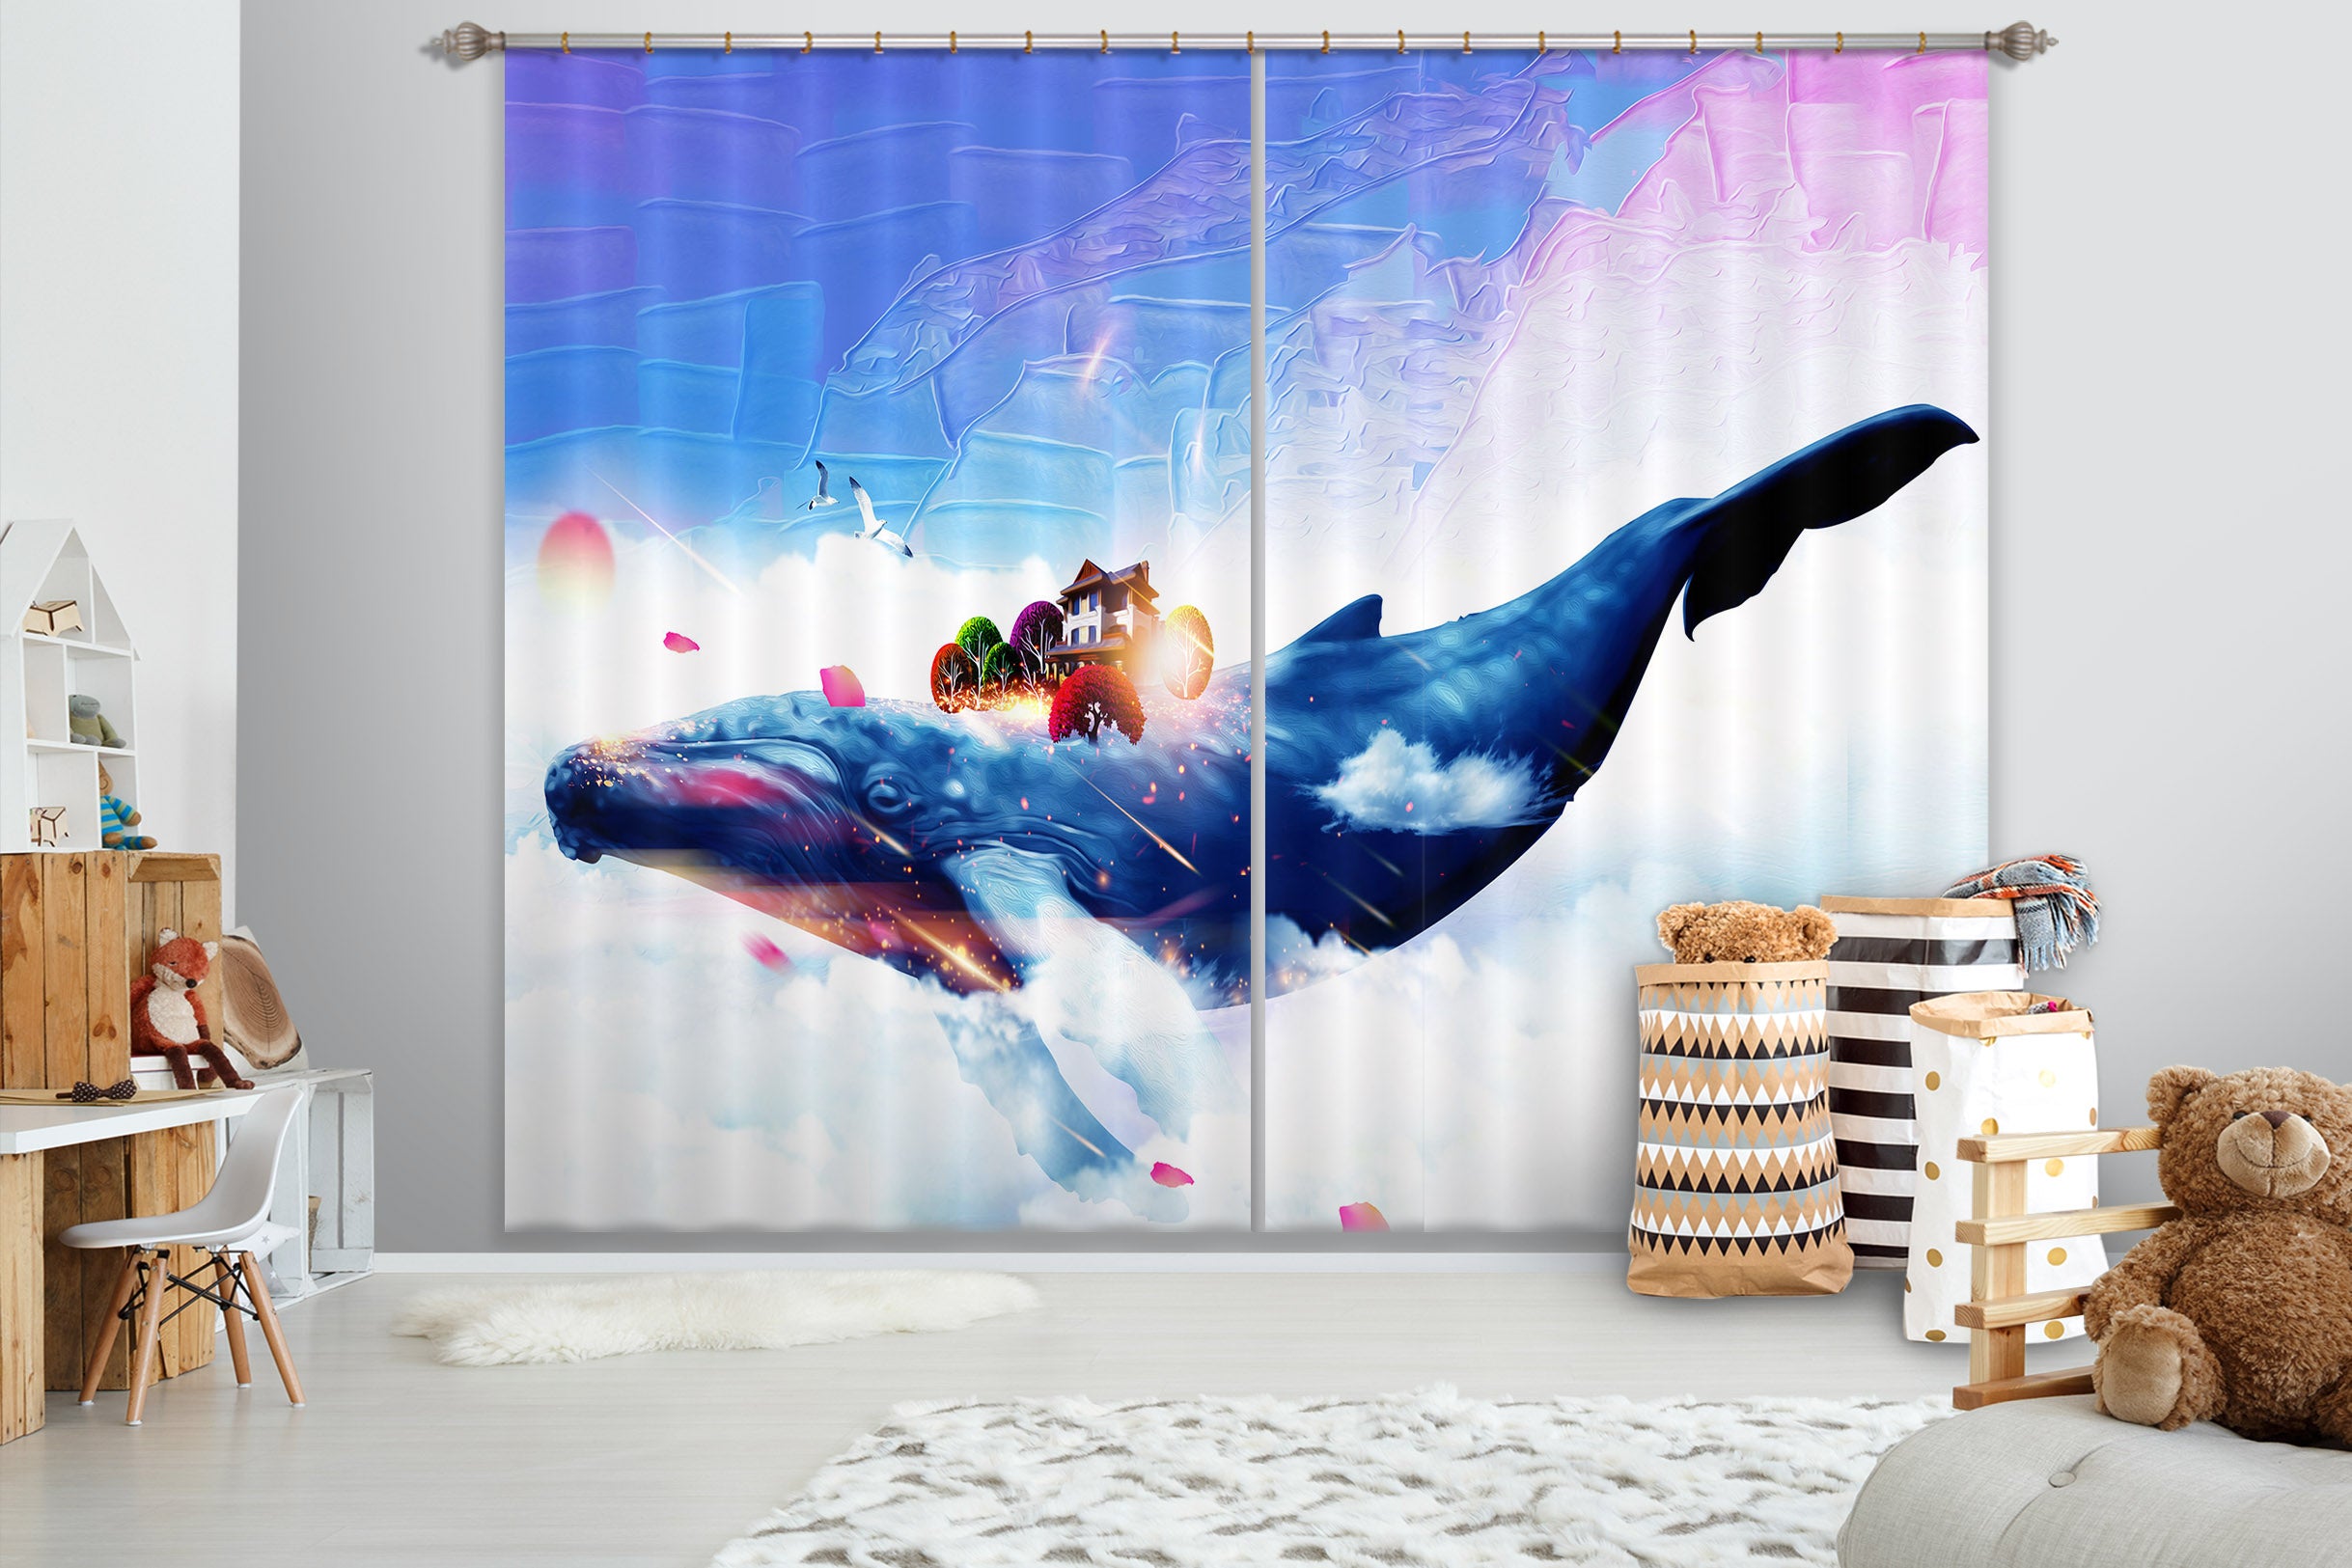 3D Blue Whale 729 Curtains Drapes